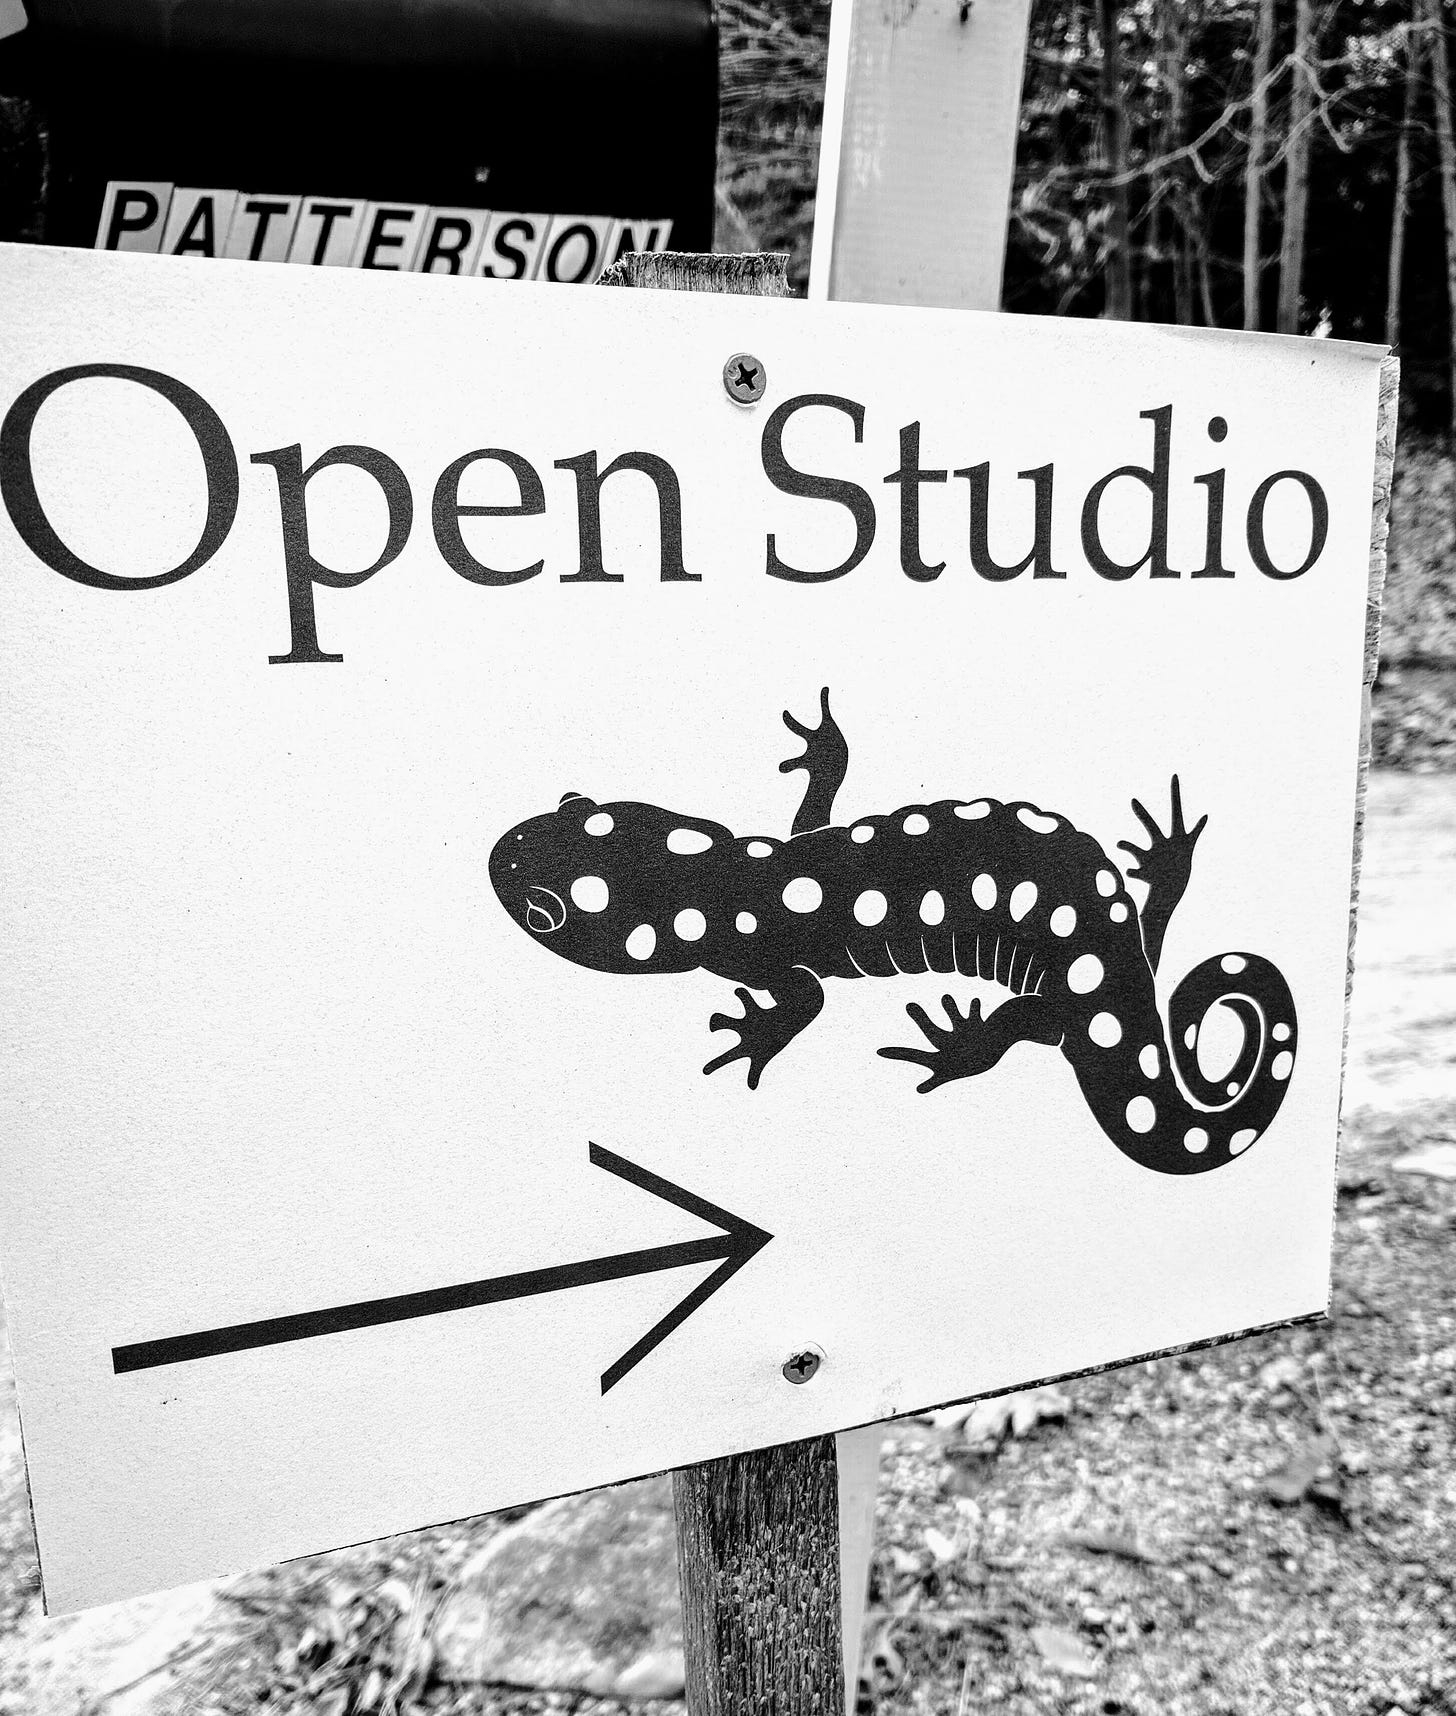 Open studio sign